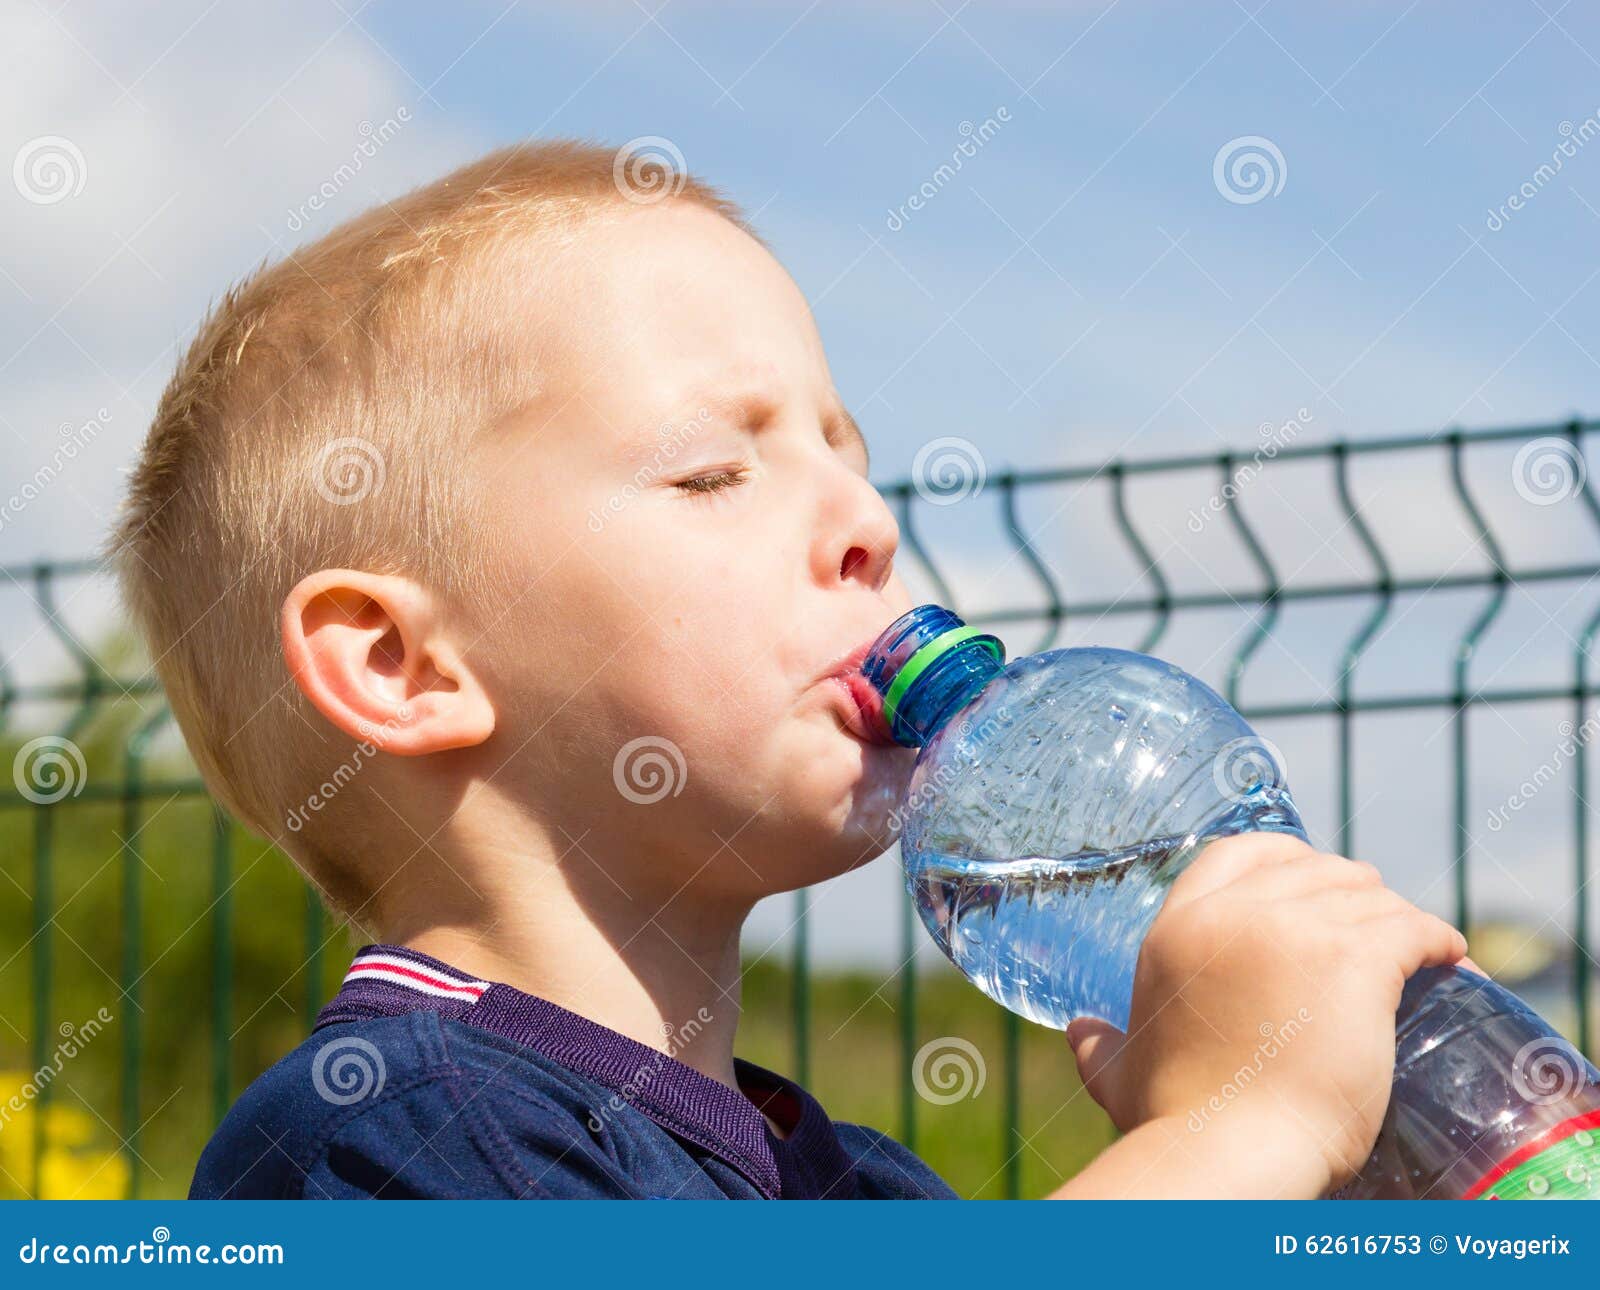 Не пьет воду в год. Мальчик пьет. Ребенок пьет воду жажда. Мальчик пьет воду. Малыш пьет воду.